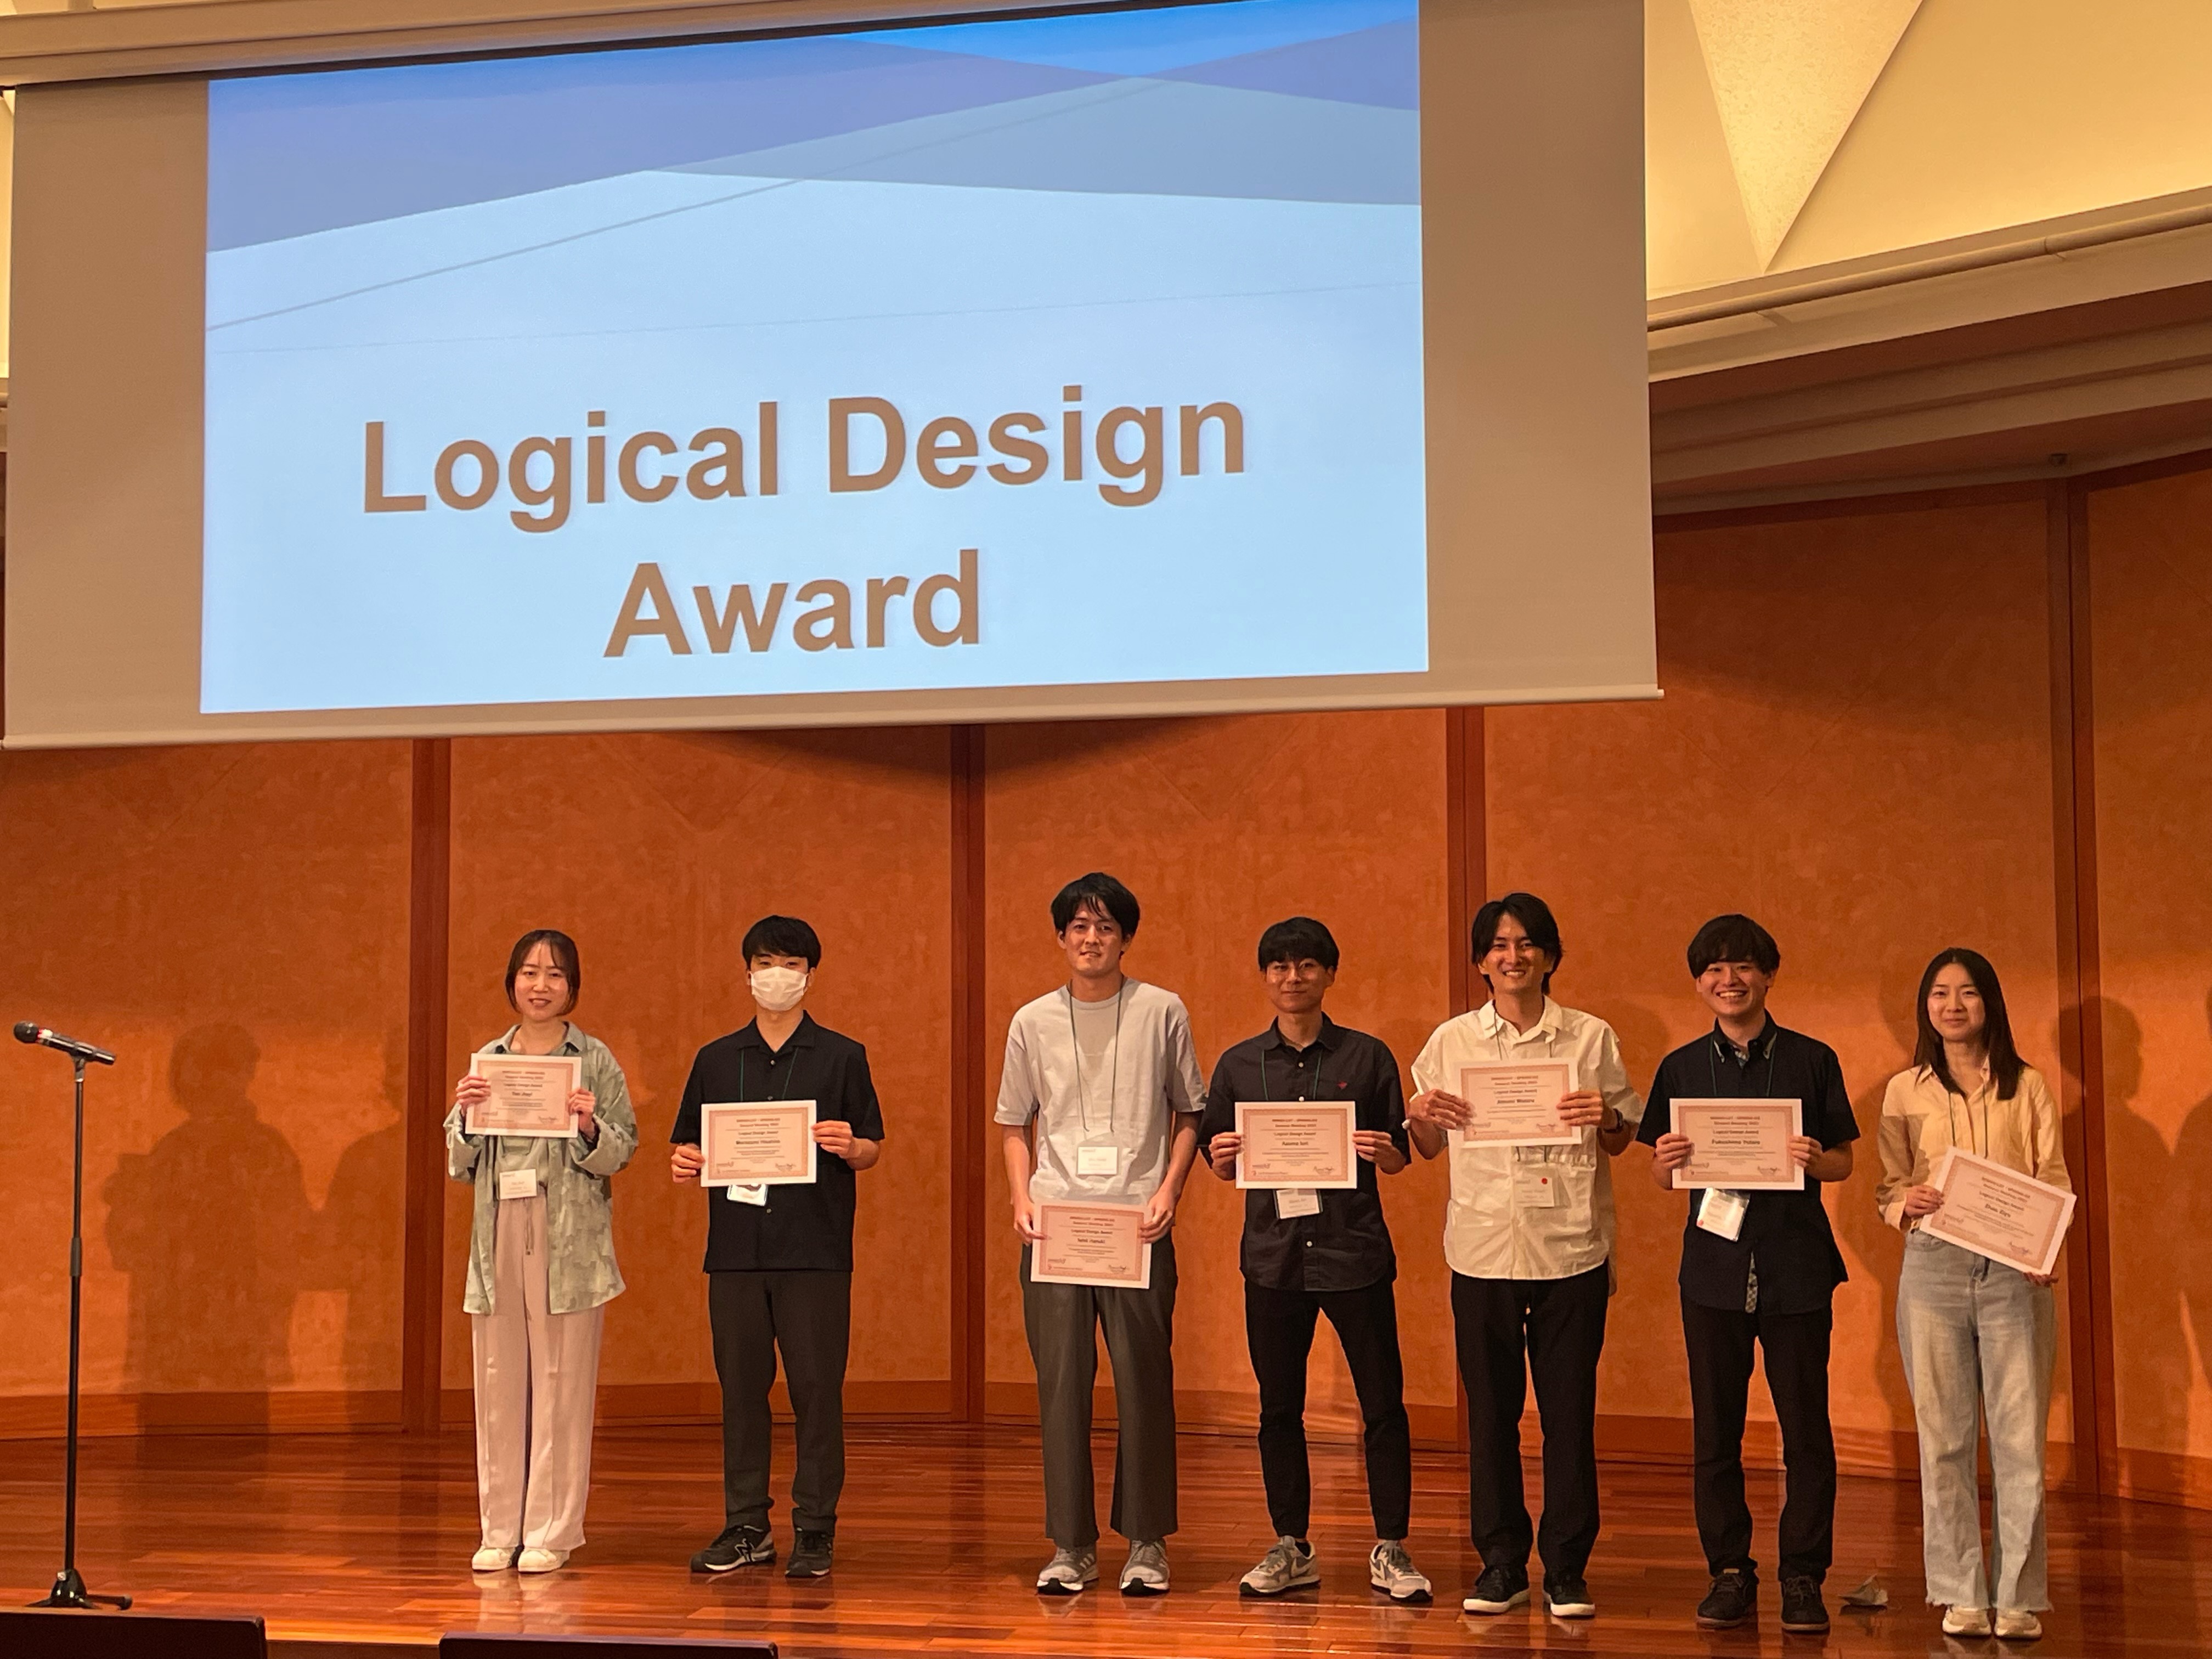 Logical Design Award